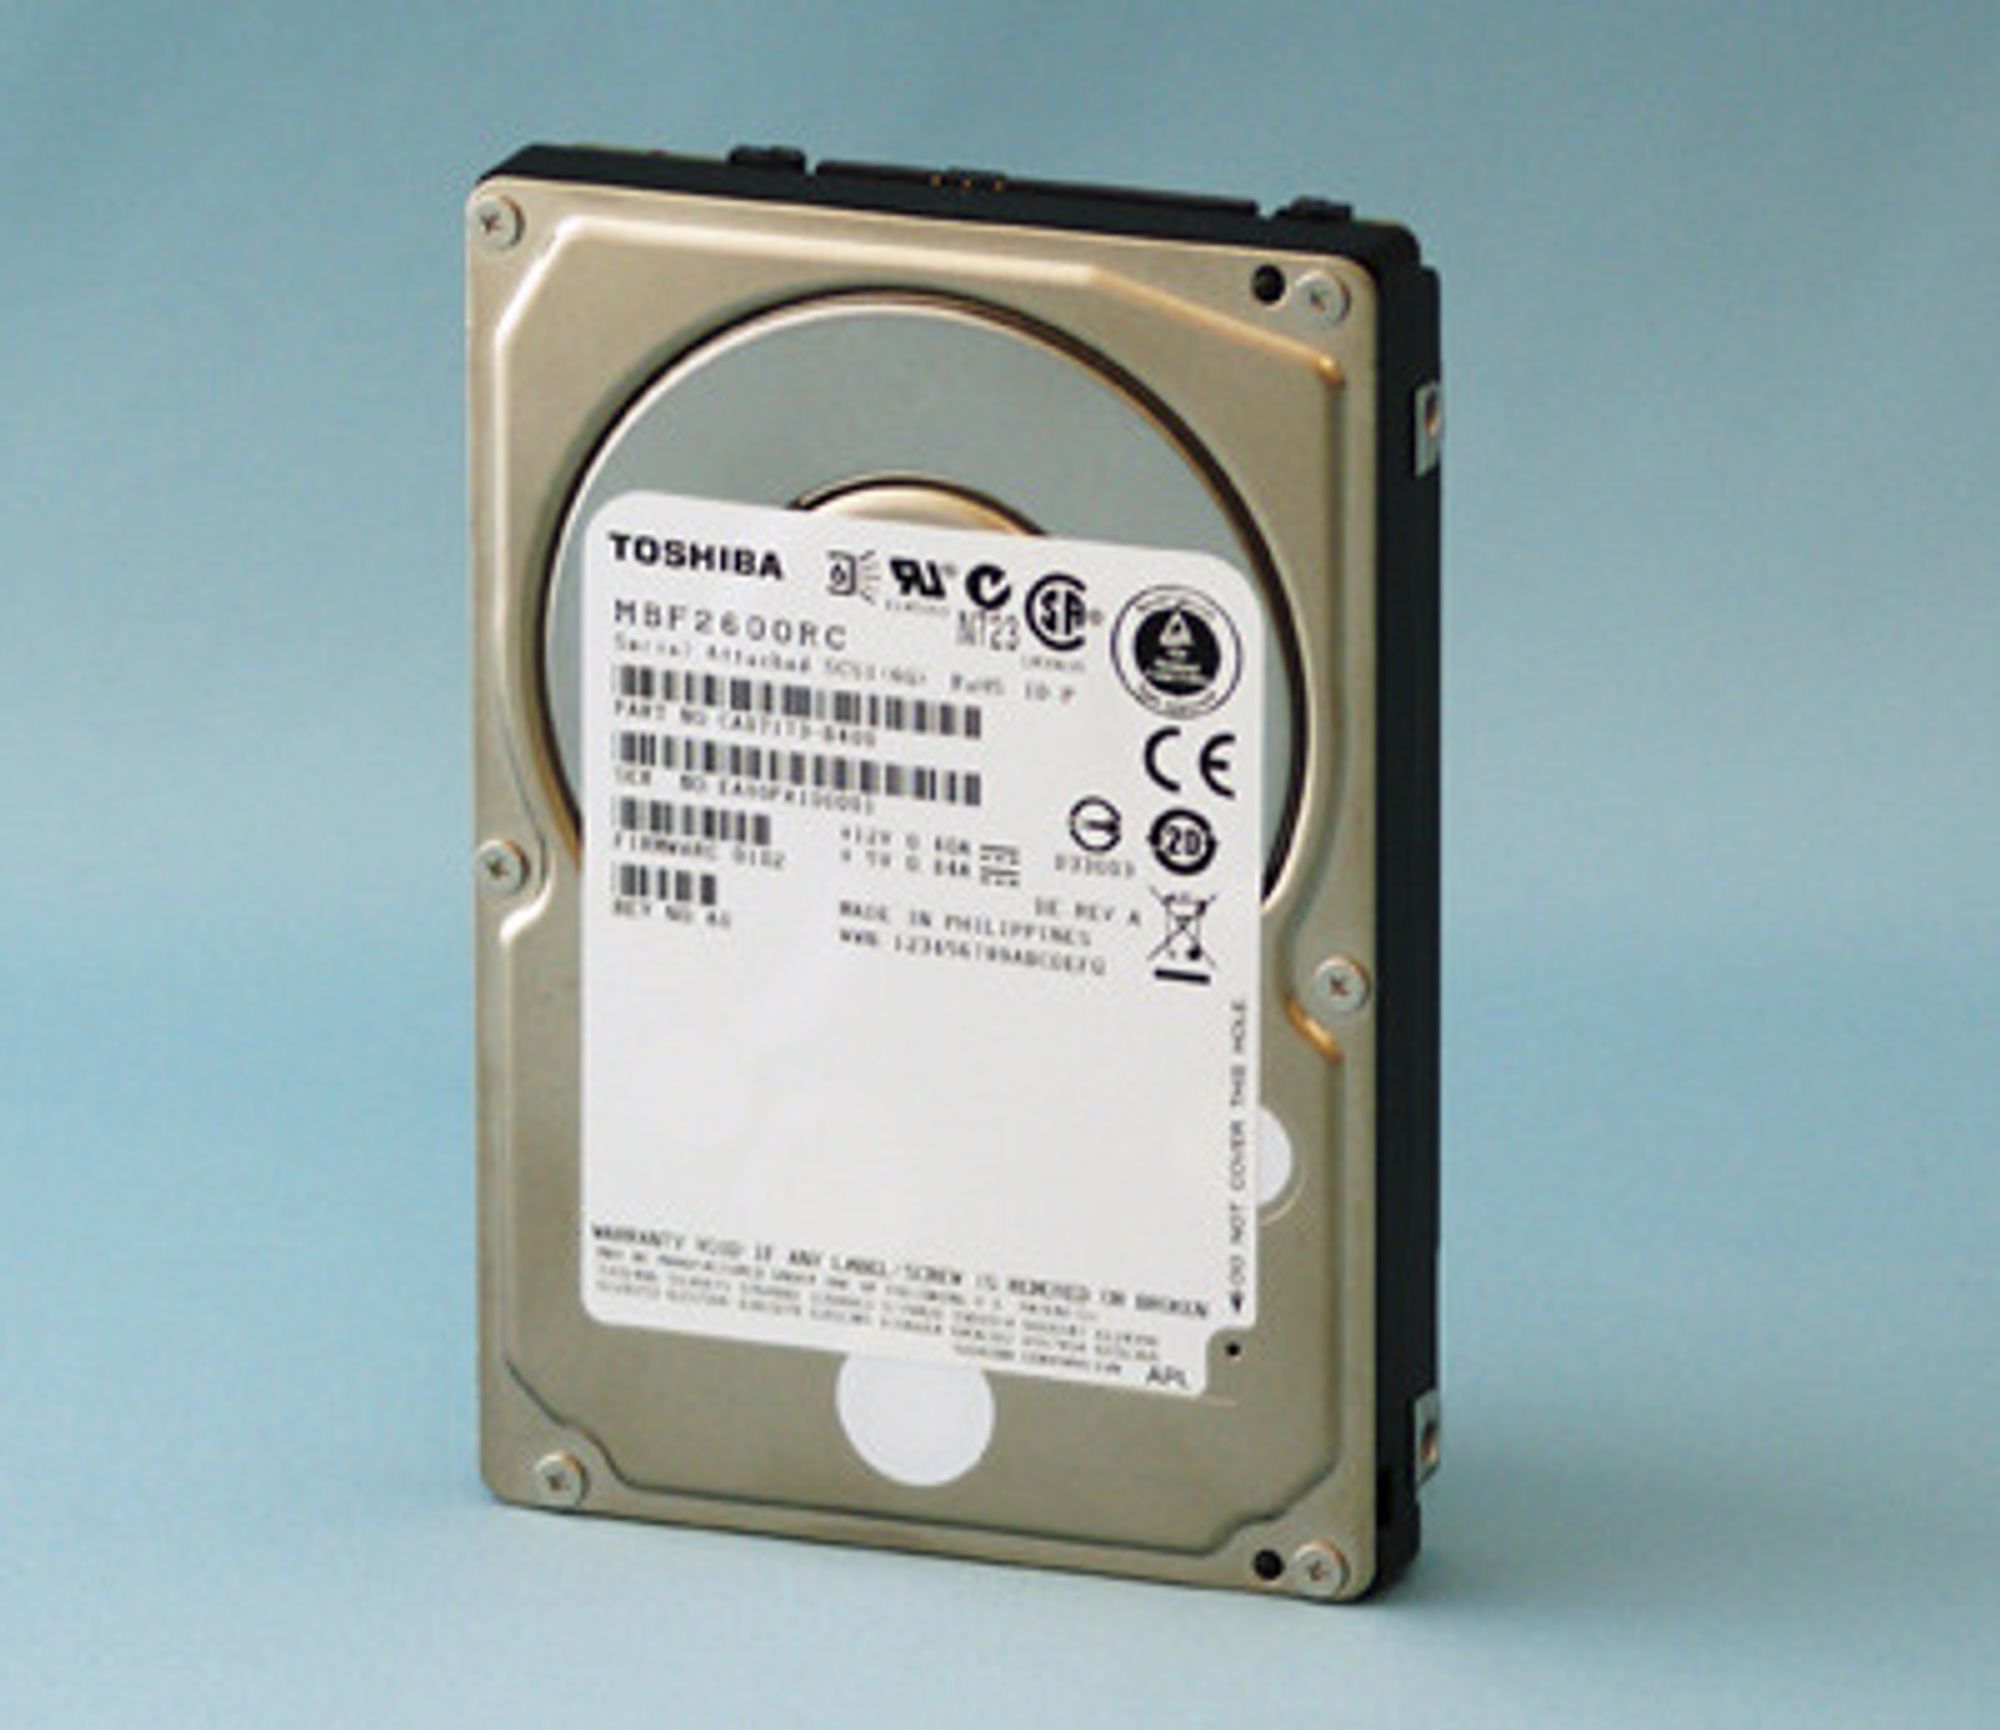 Toshiba MBF2600RC 2,5 tommer harddisk